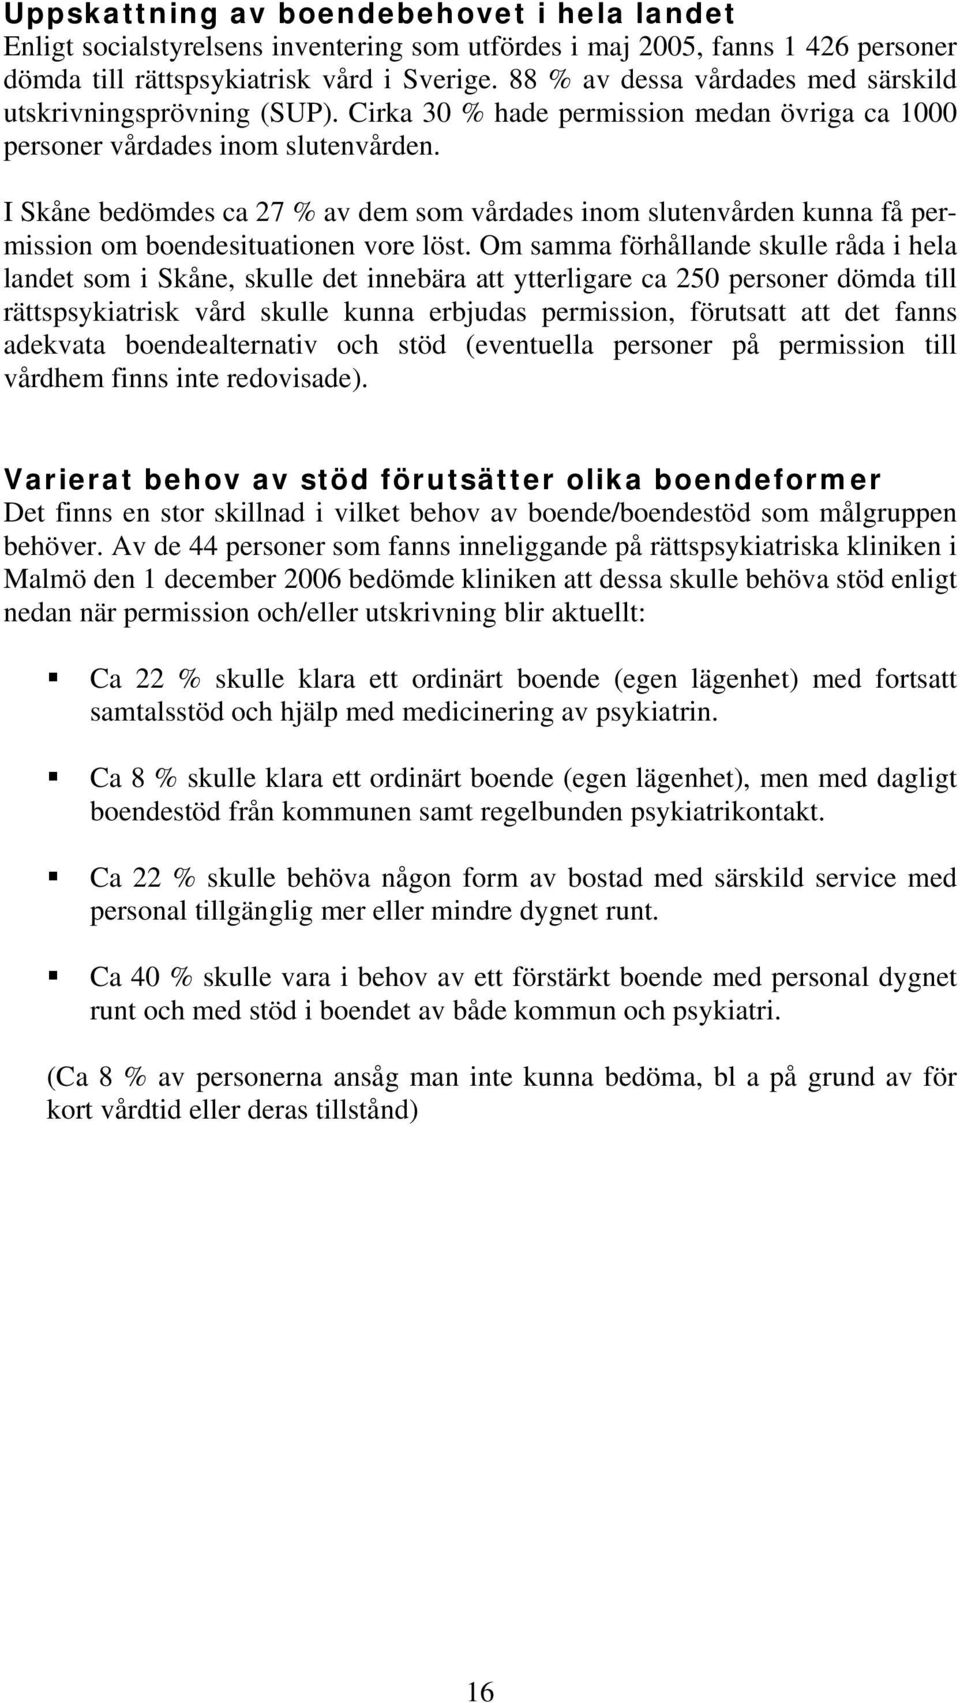 I Skåne bedömdes ca 27 % av dem som vårdades inom slutenvården kunna få permission om boendesituationen vore löst.